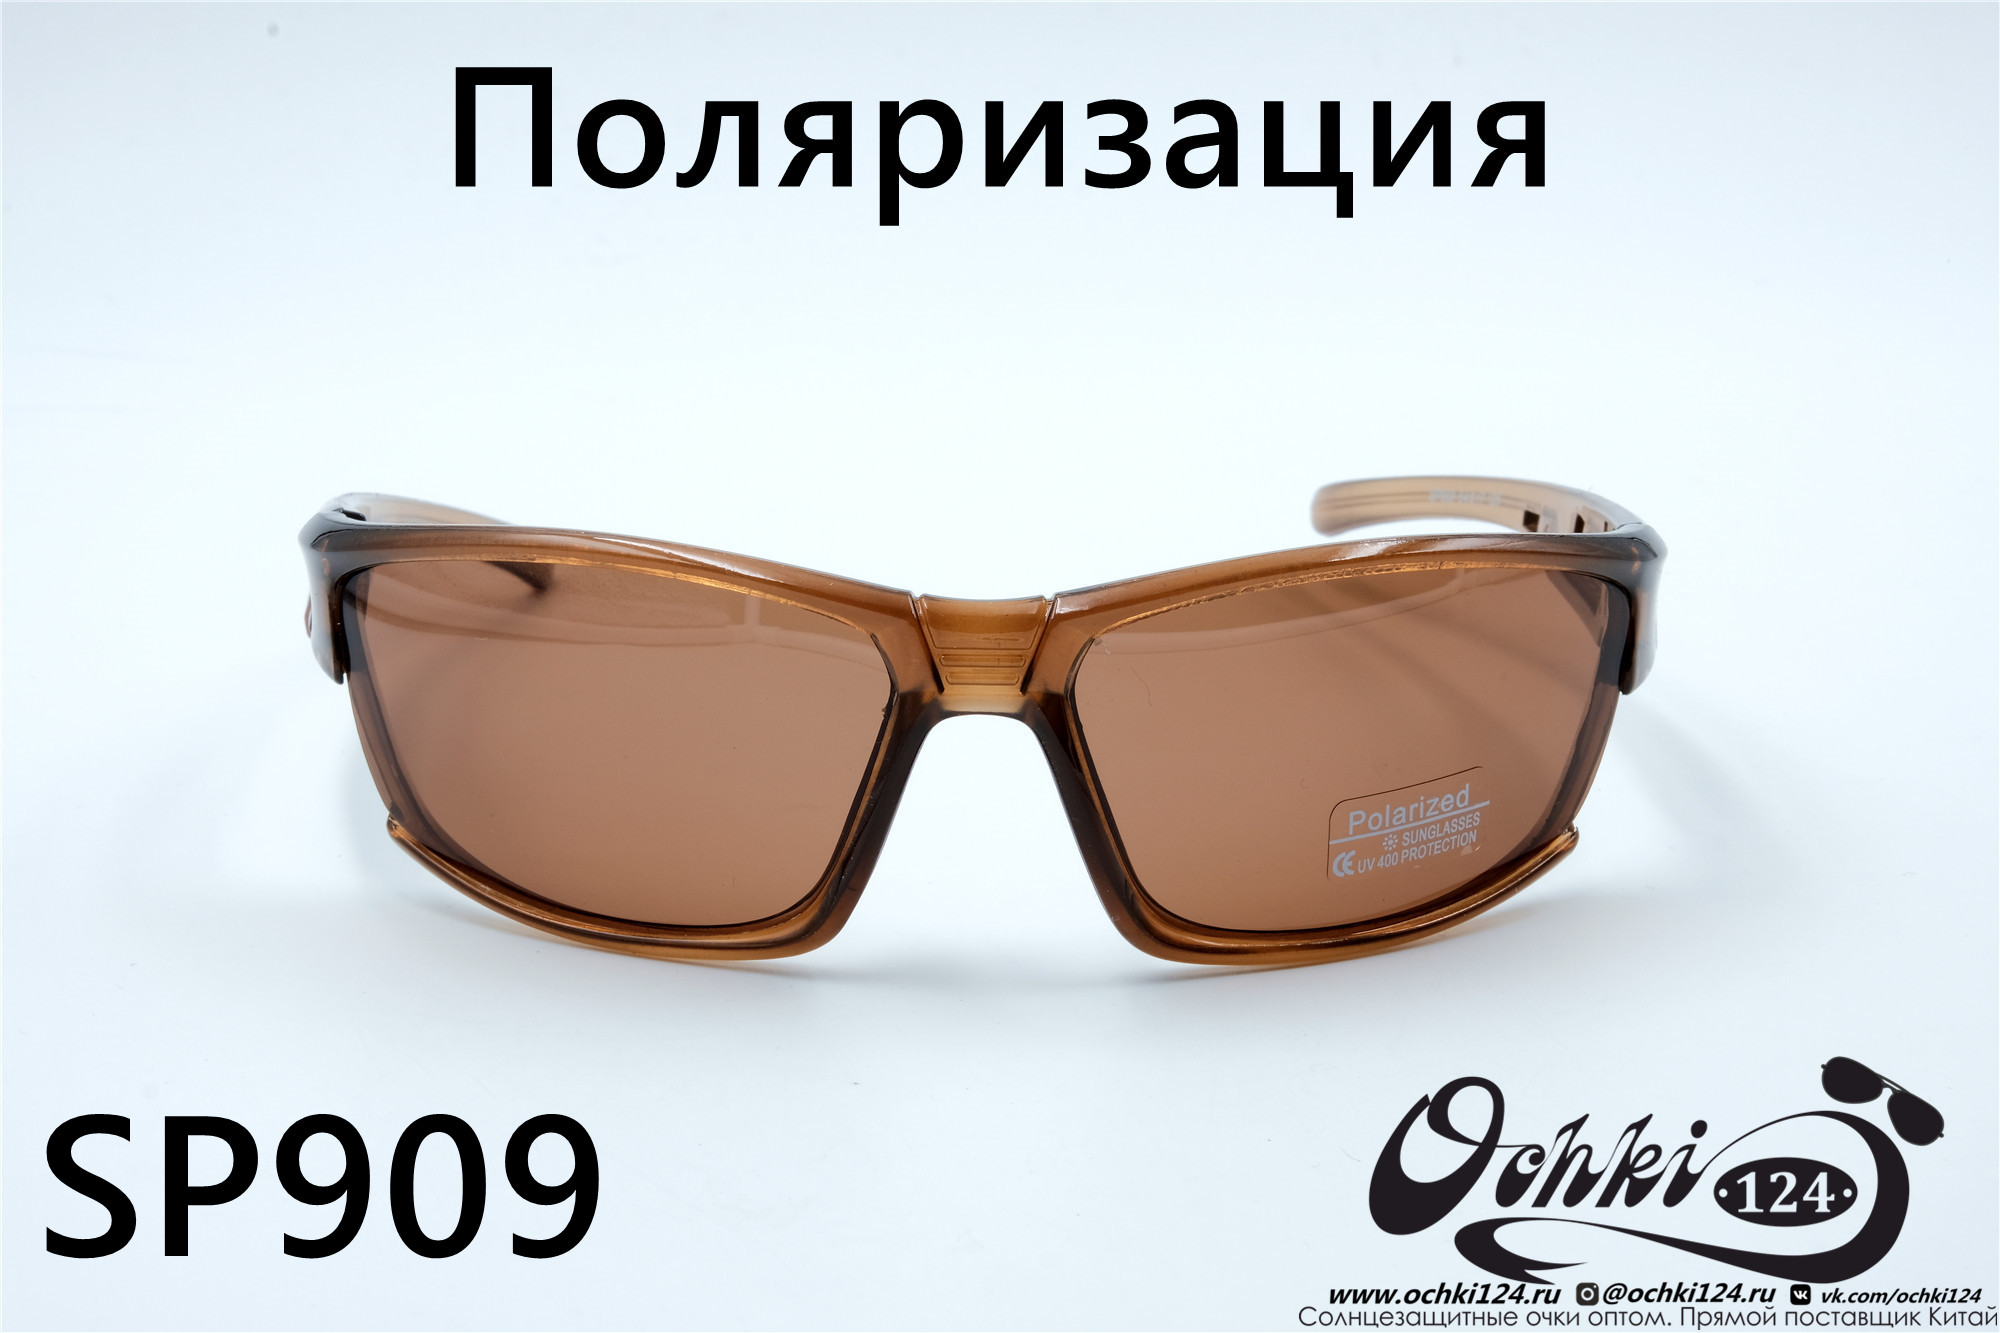  Солнцезащитные очки картинка 2022 Мужские Поляризованные Спорт Materice SP909-3 